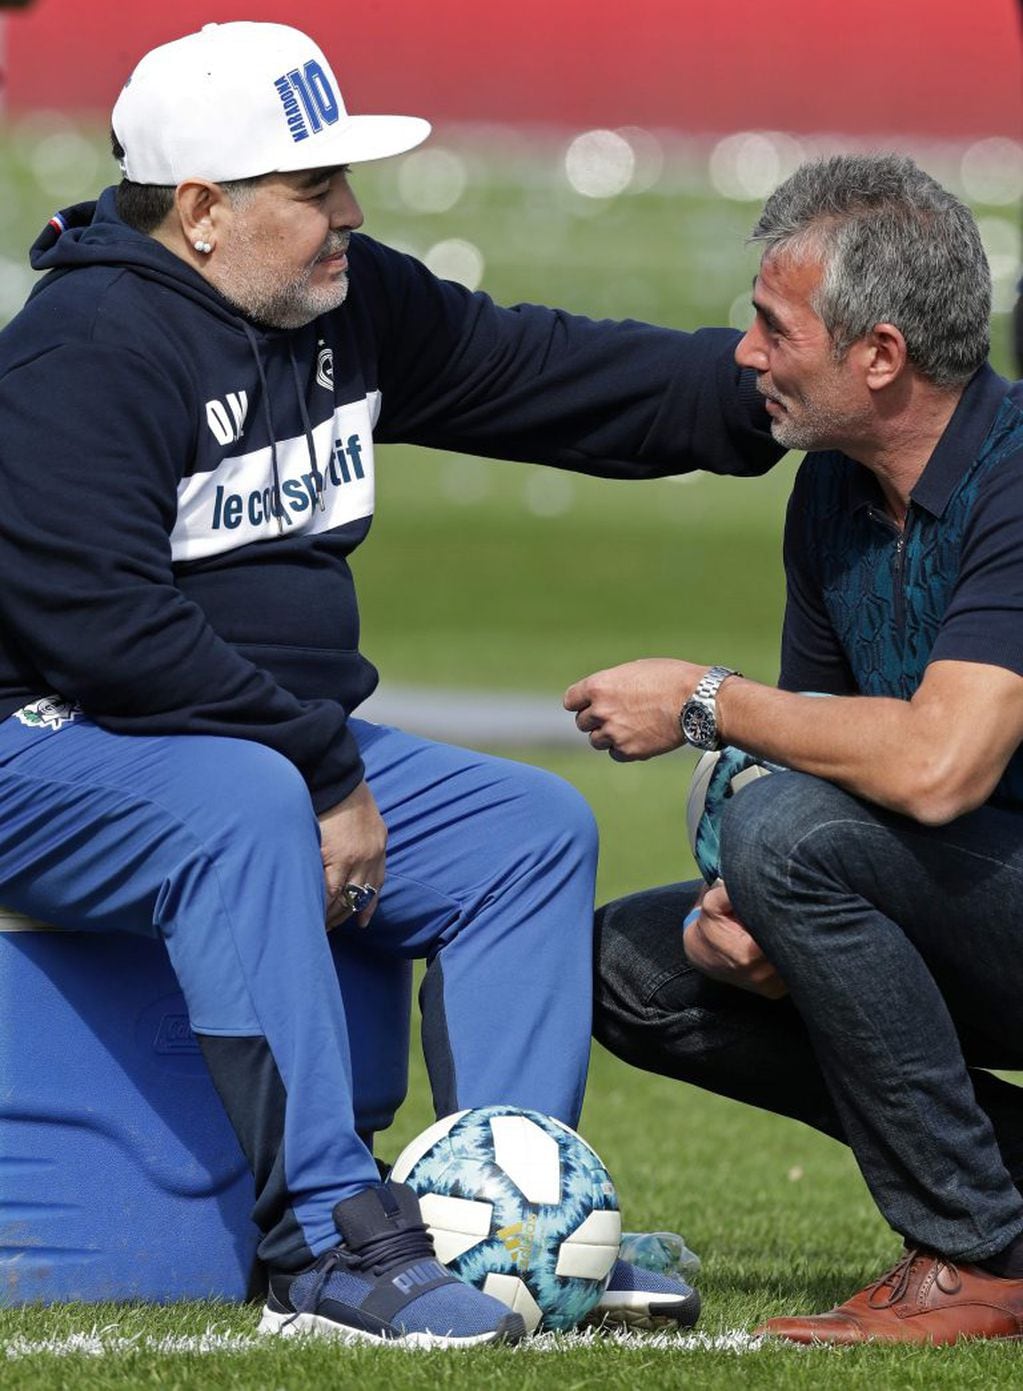 Preocupa que esta renuncia pueda influir en la recuperación de Maradona (Photo by ALEJANDRO PAGNI / AFP)